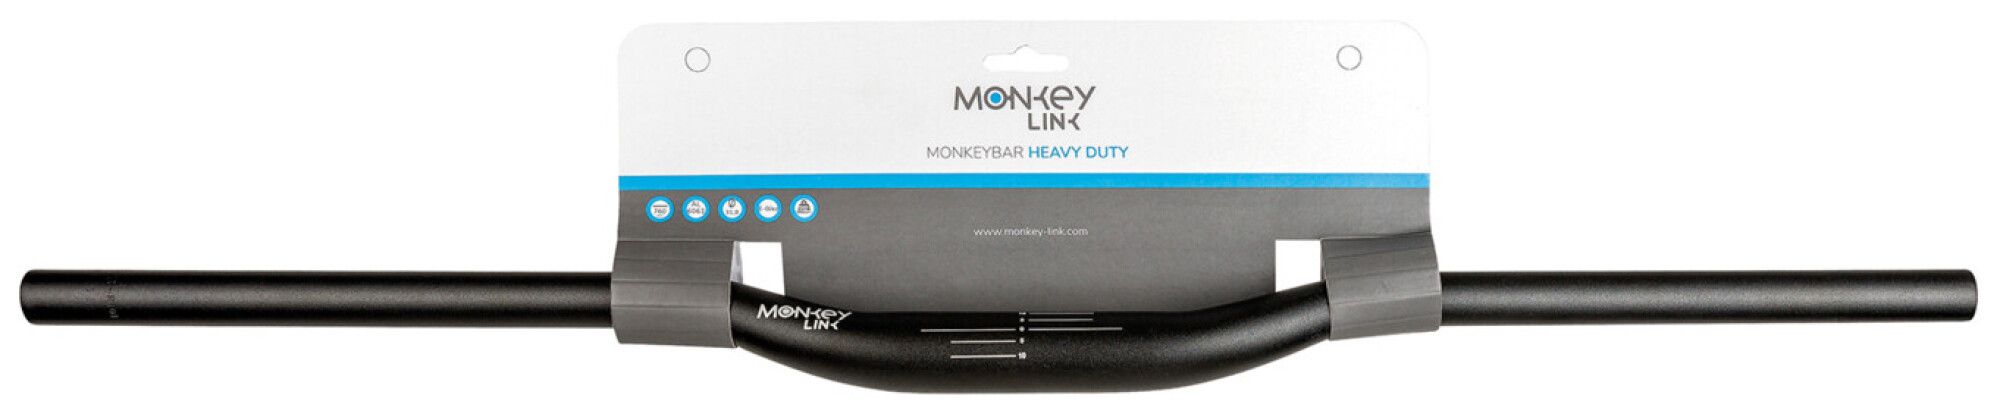 MonkeyLink MONKEYBAR HEAVY DUTY (Bild 2)